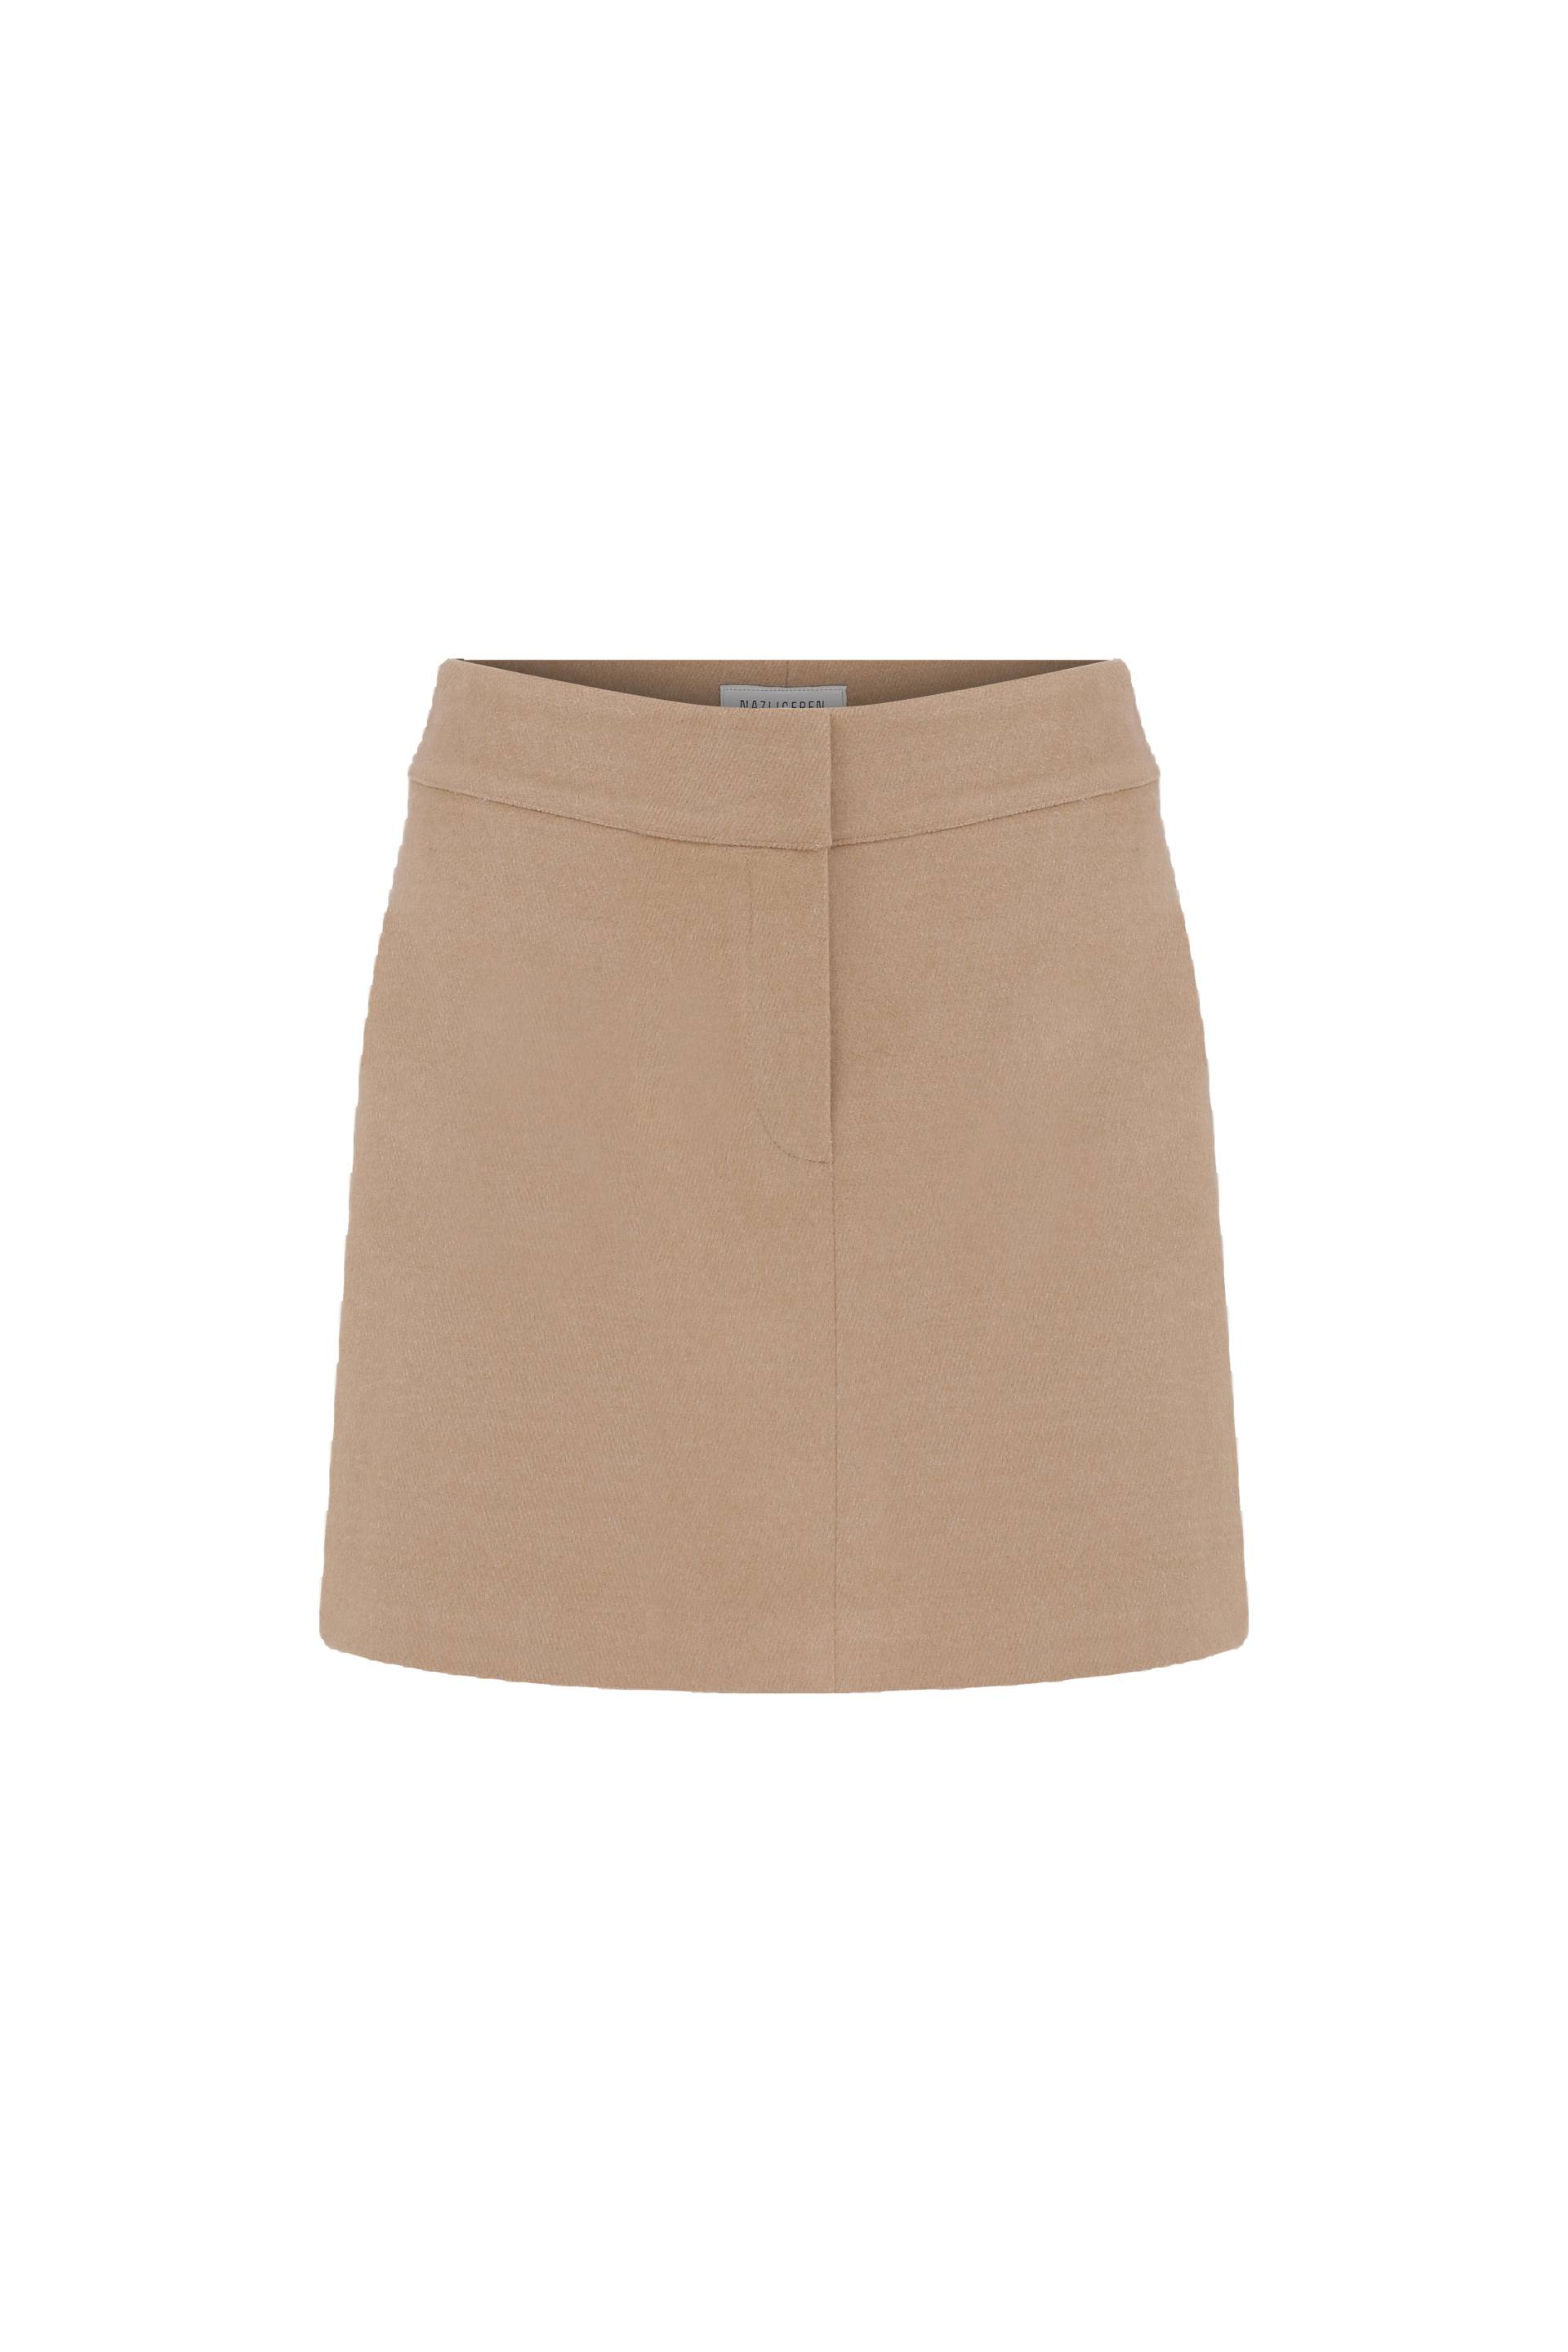 Marde Wool Mini Skirt in Beige von Nazli Ceren